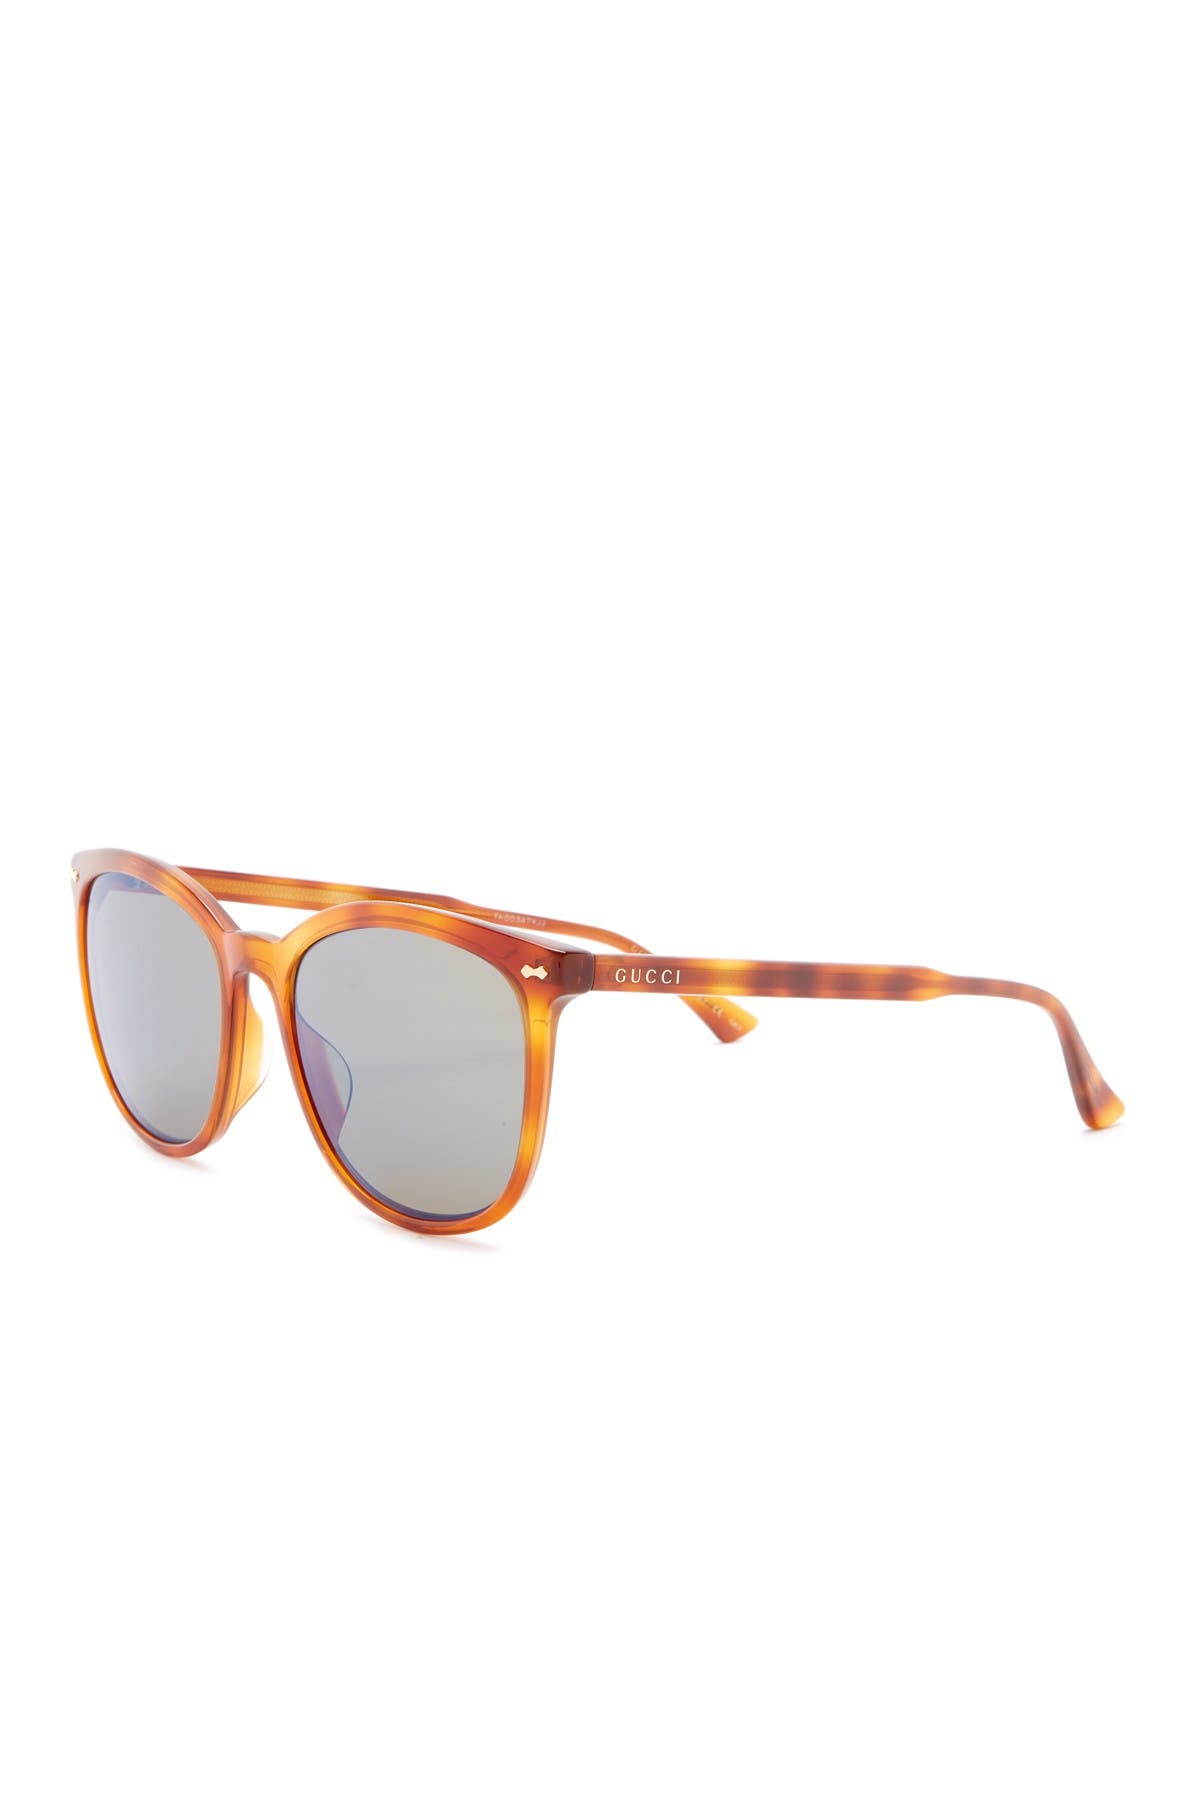 GUCCI | 59mm Square Sunglasses 